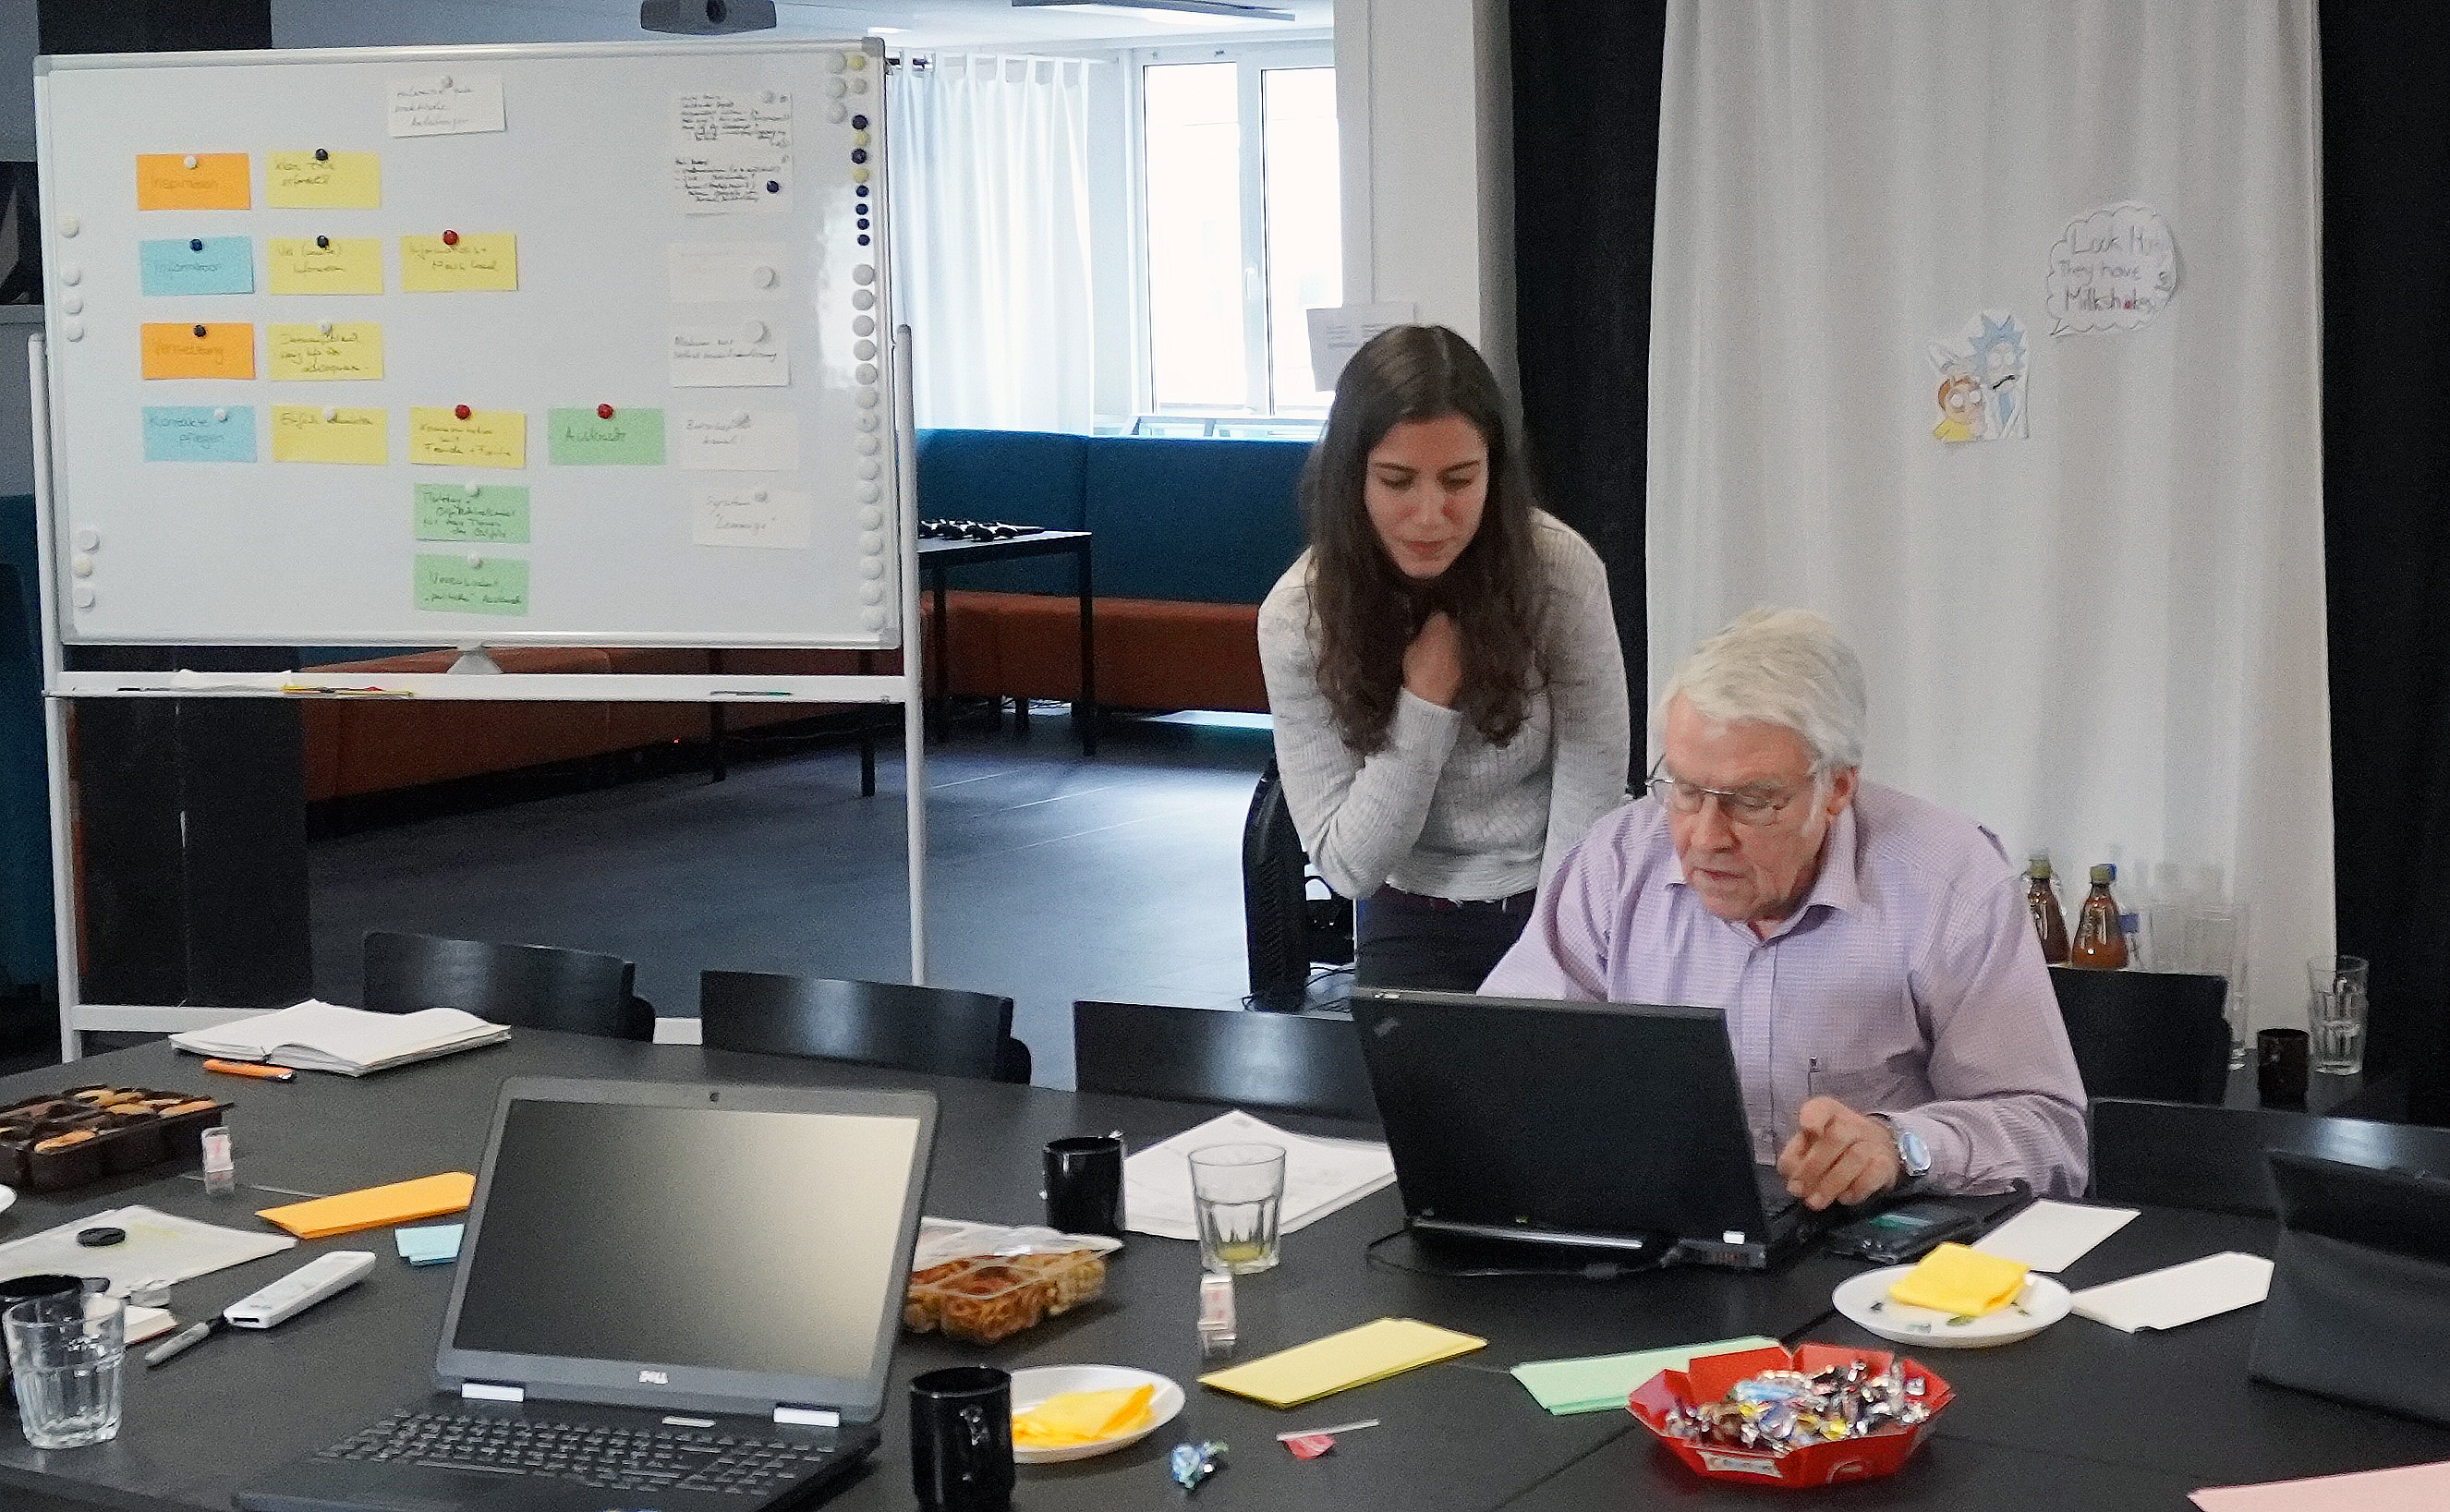 Zusammenarbeit im Workshop Anna-Maria Ebermann erklärt Josef Thomas am Laptop.